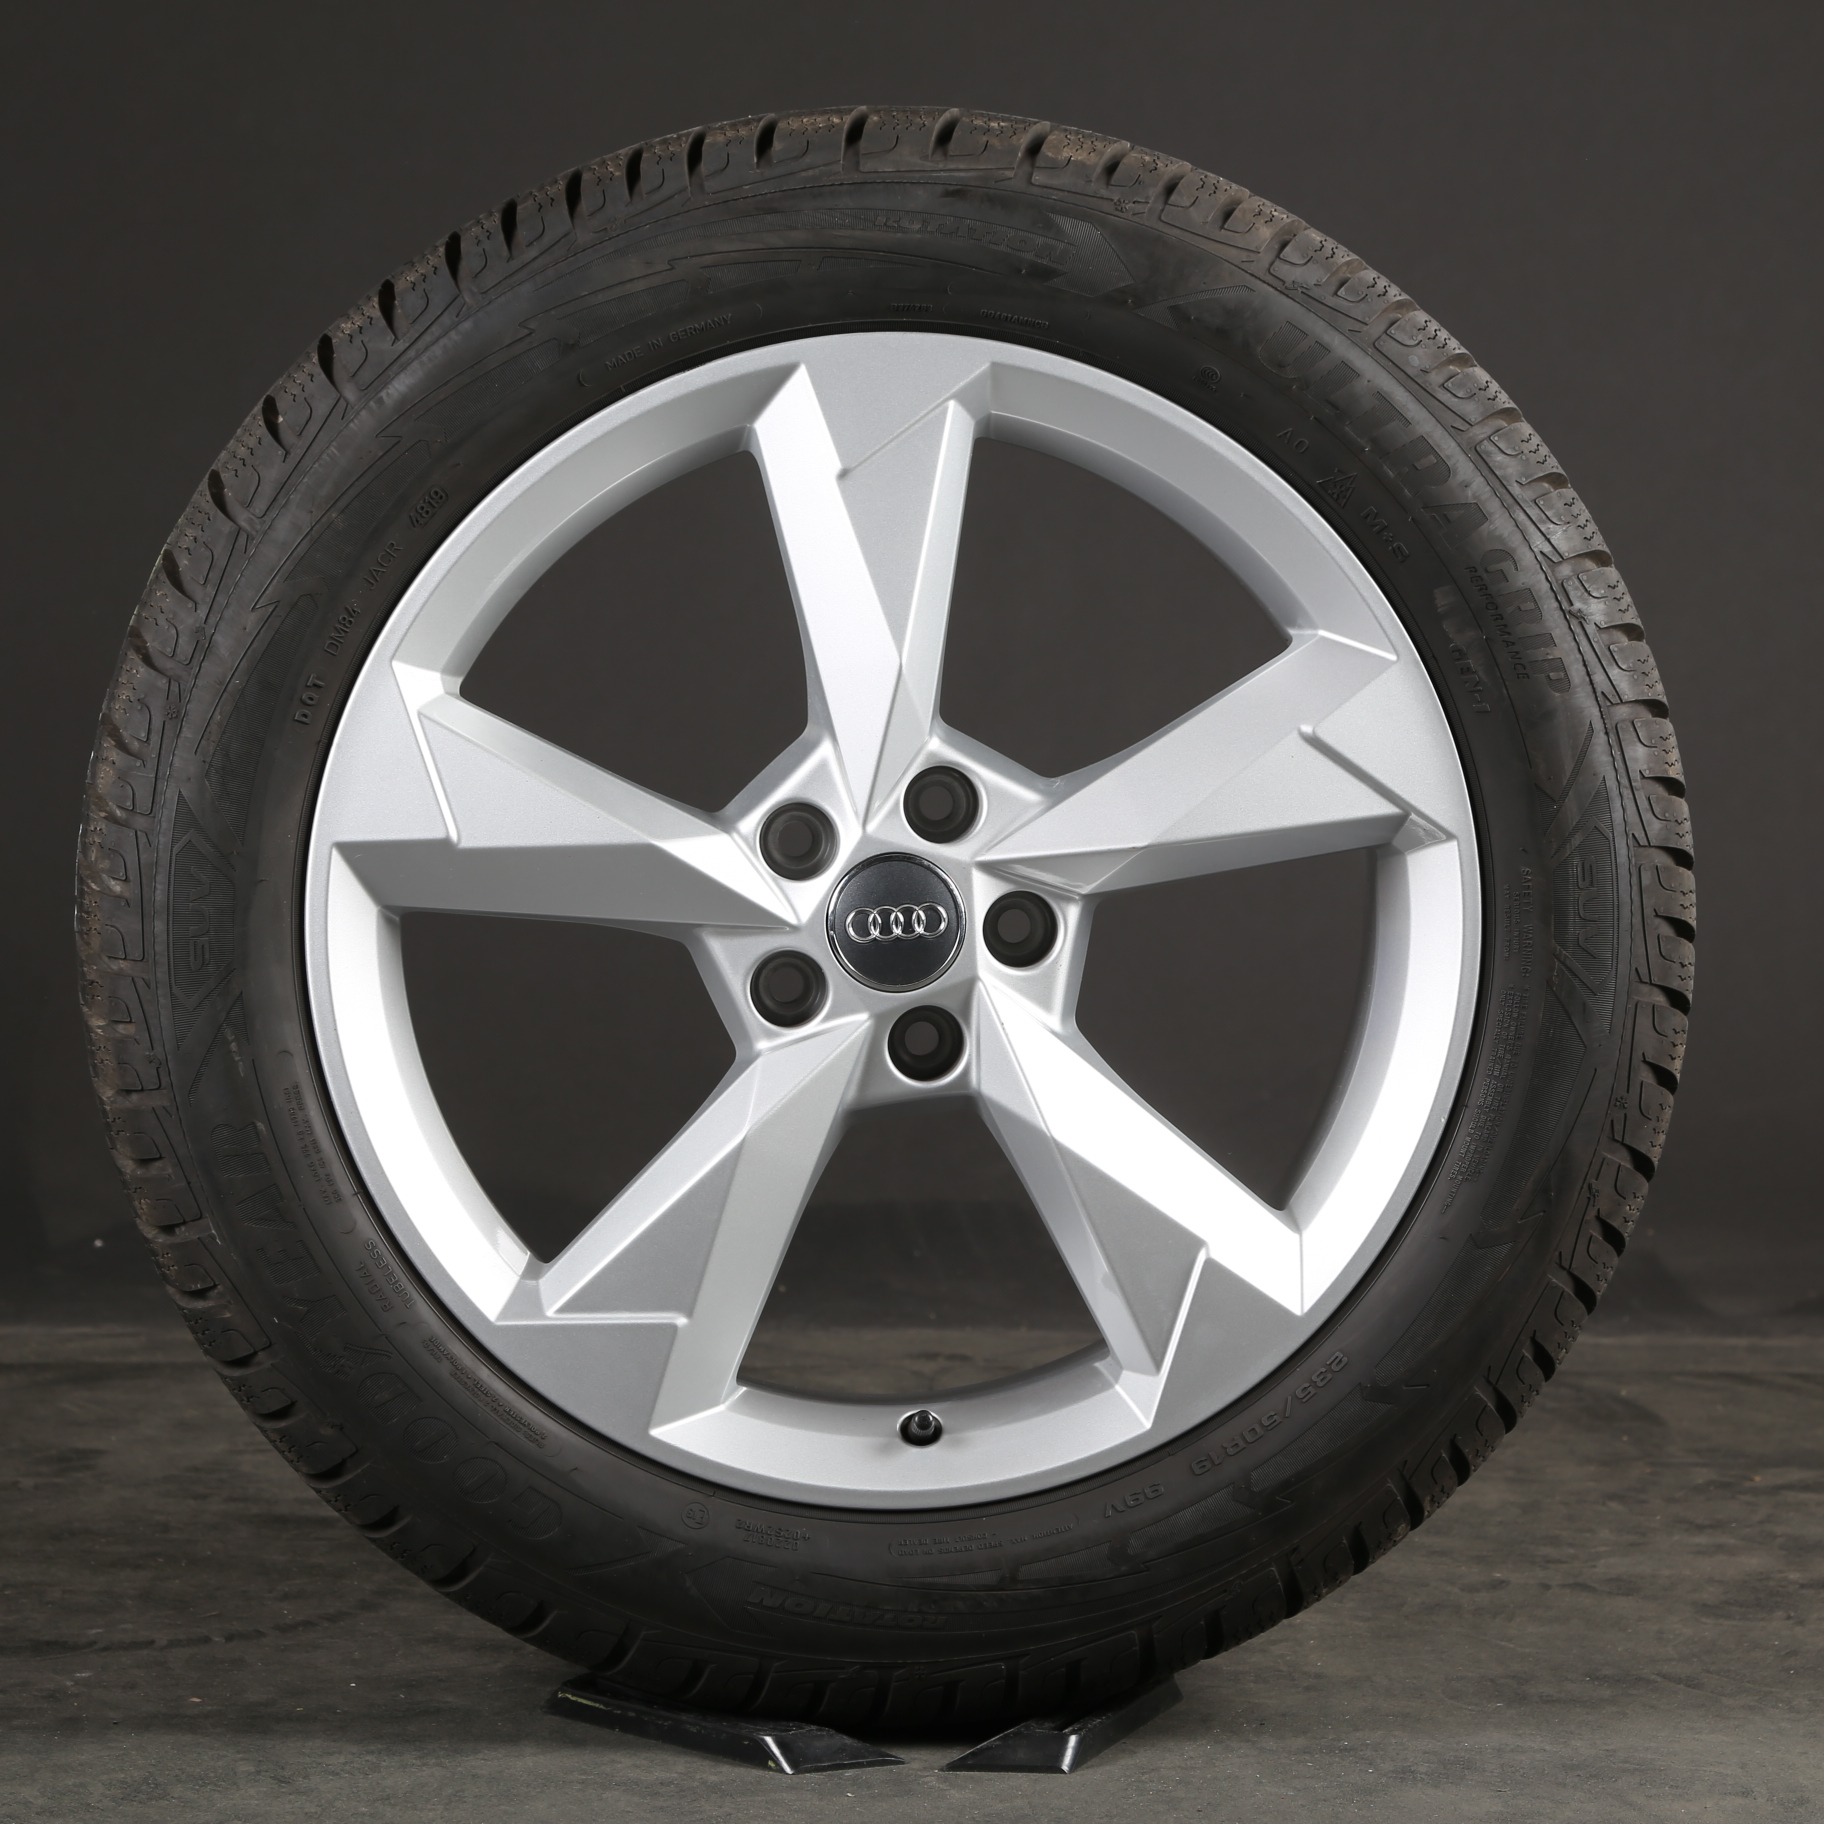 Neumáticos de invierno de 19 pulgadas llantas de invierno originales Audi Q3 F3 83A601025N